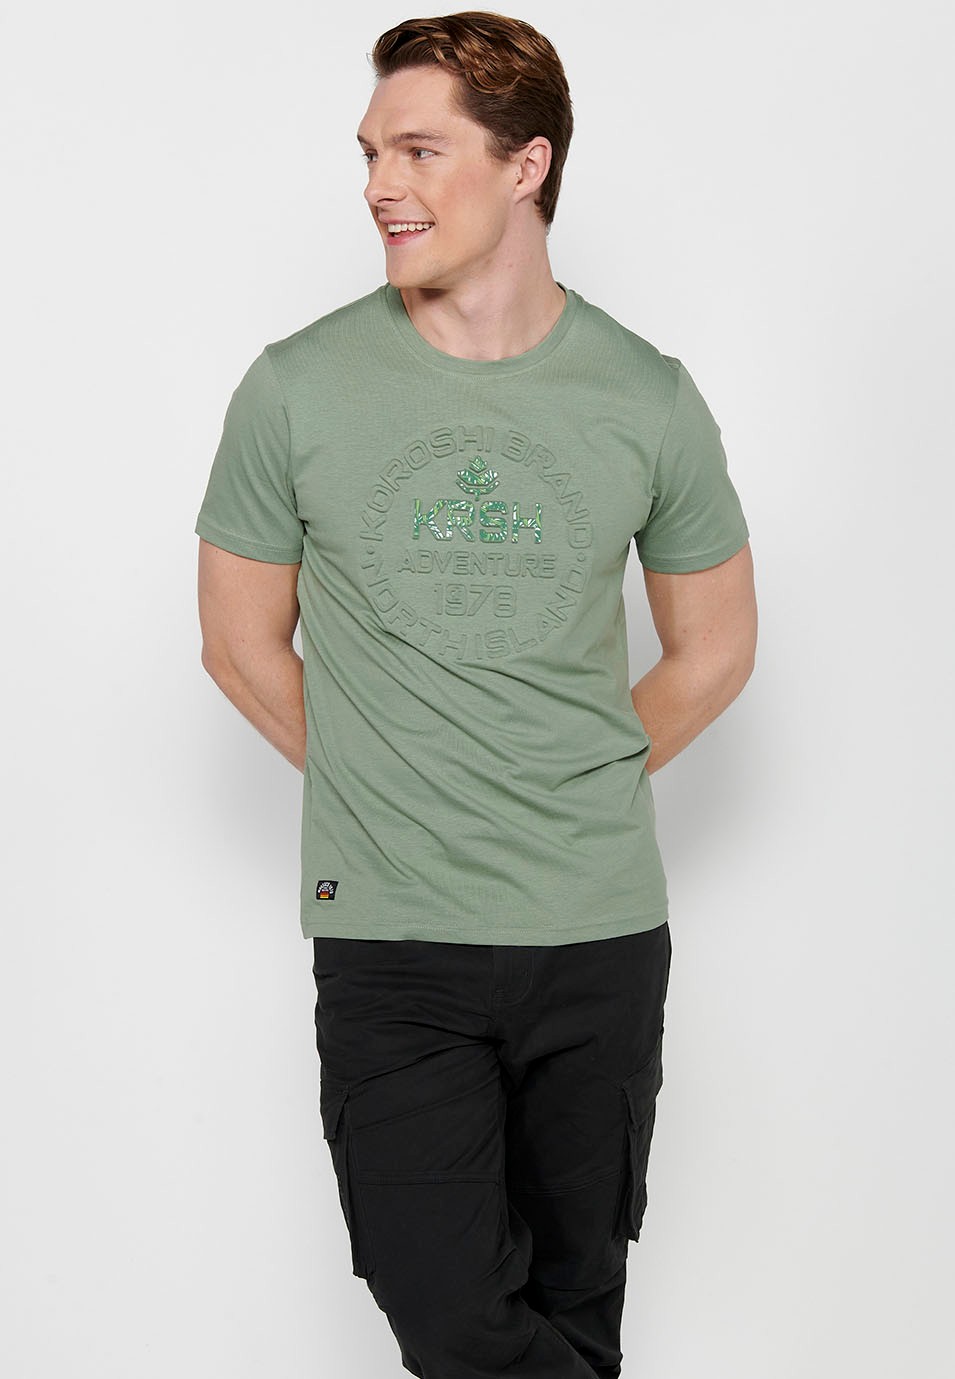 Men's Khaki Color Round Neck Cotton Short Sleeve T-shirt